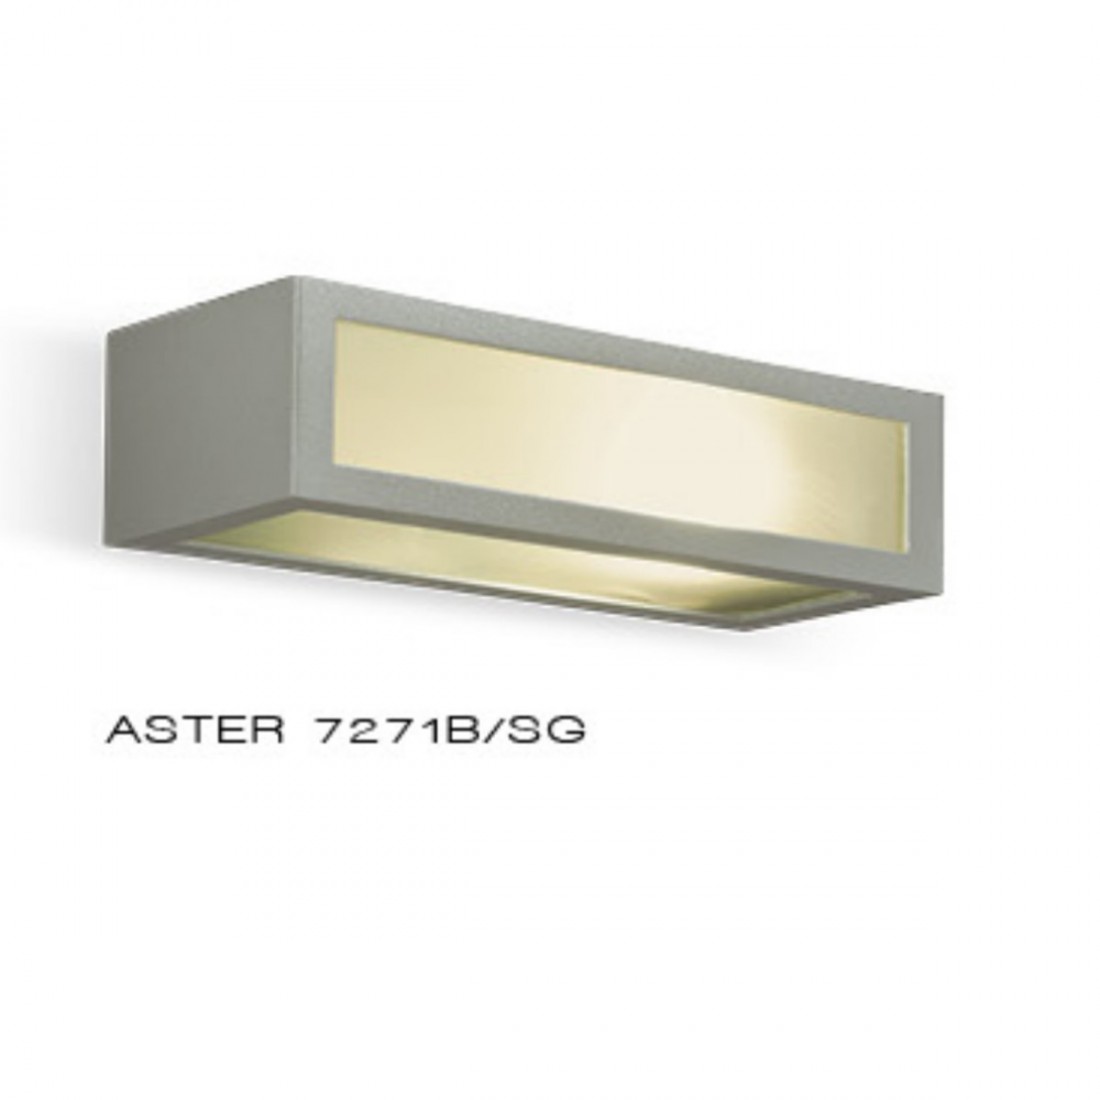 Applique murale PG-ASTER 7271 B E27 LED applique gris aluminium blanc antacite extérieur IP54